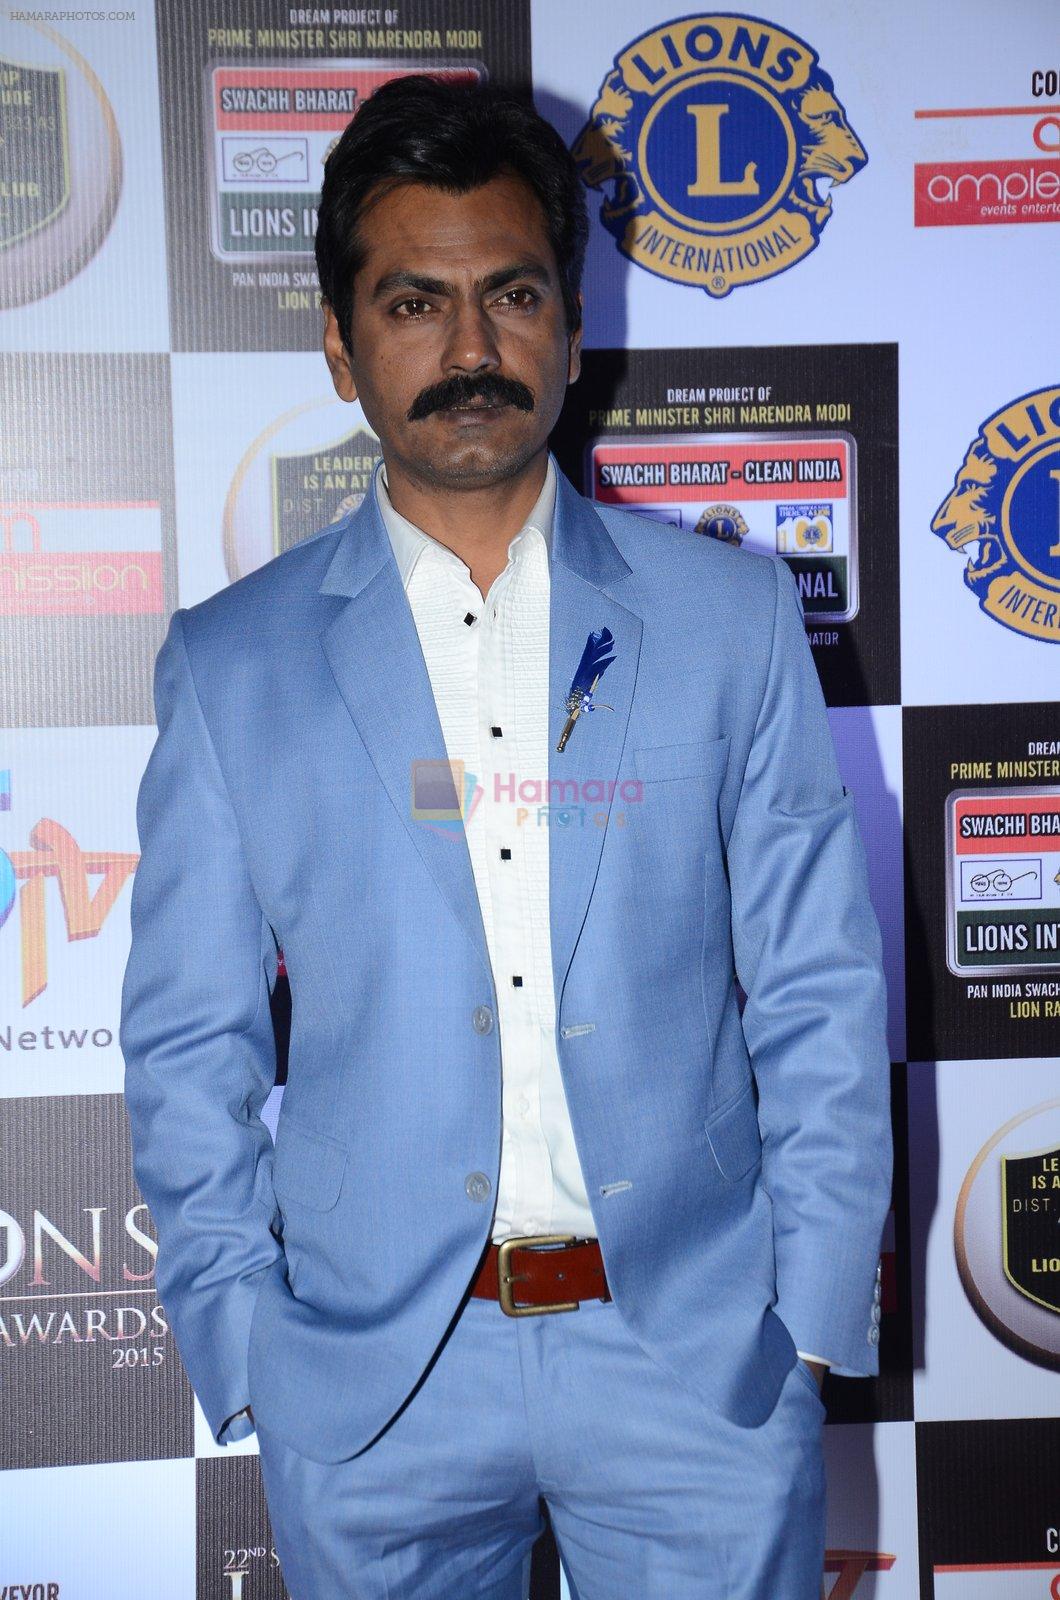 Nawazuddin Siddiqui at Lions Awards 2016 on 22nd Jan 2016